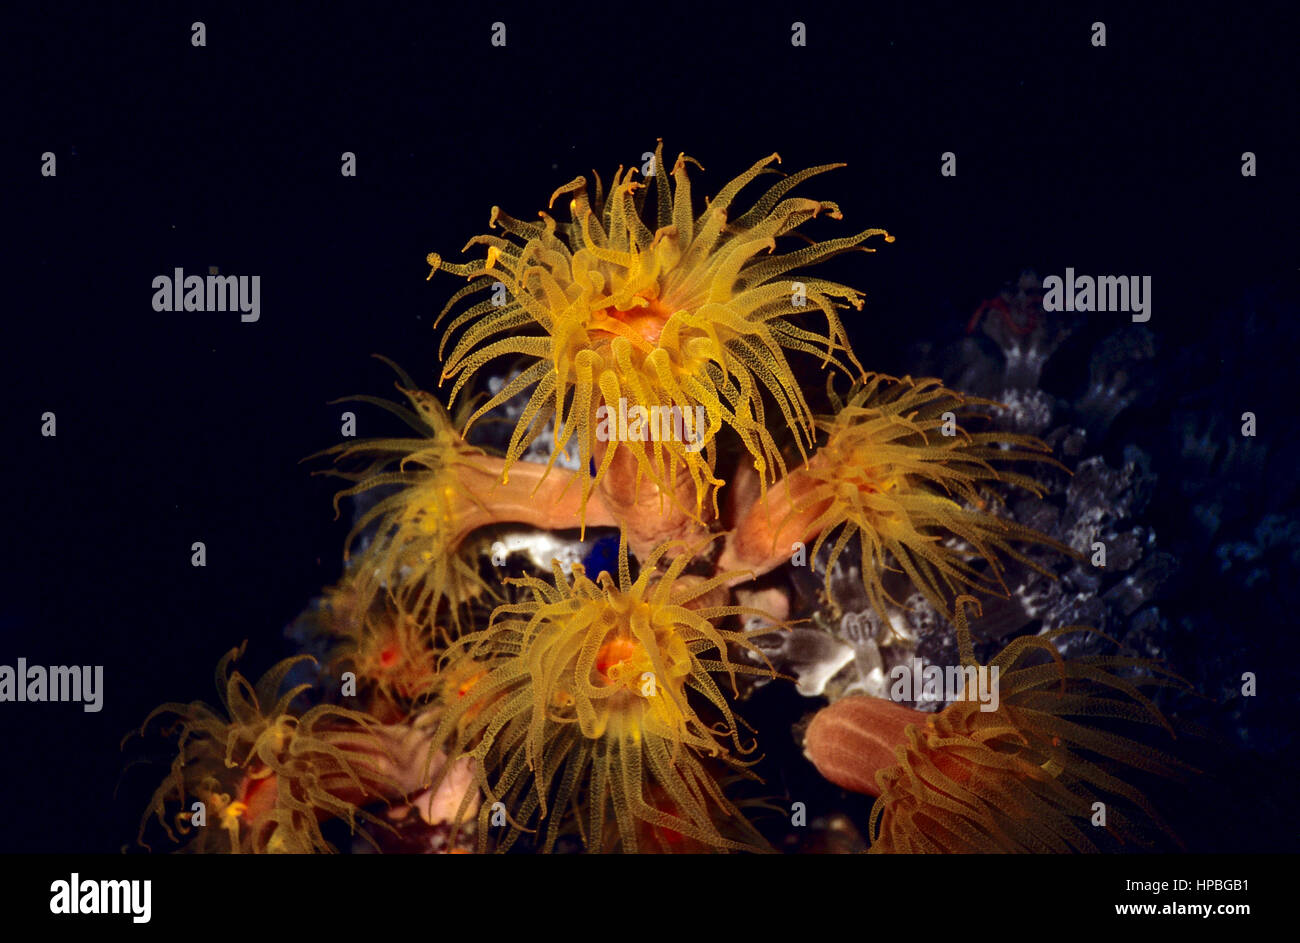 Un groupe de golden cup coraux (Tubastraea aurea) dans l'alimentation, à l'aide actuelle leurs nombreuses longues tentacules. Photographié dans la mer Rouge Egyptienne. Banque D'Images